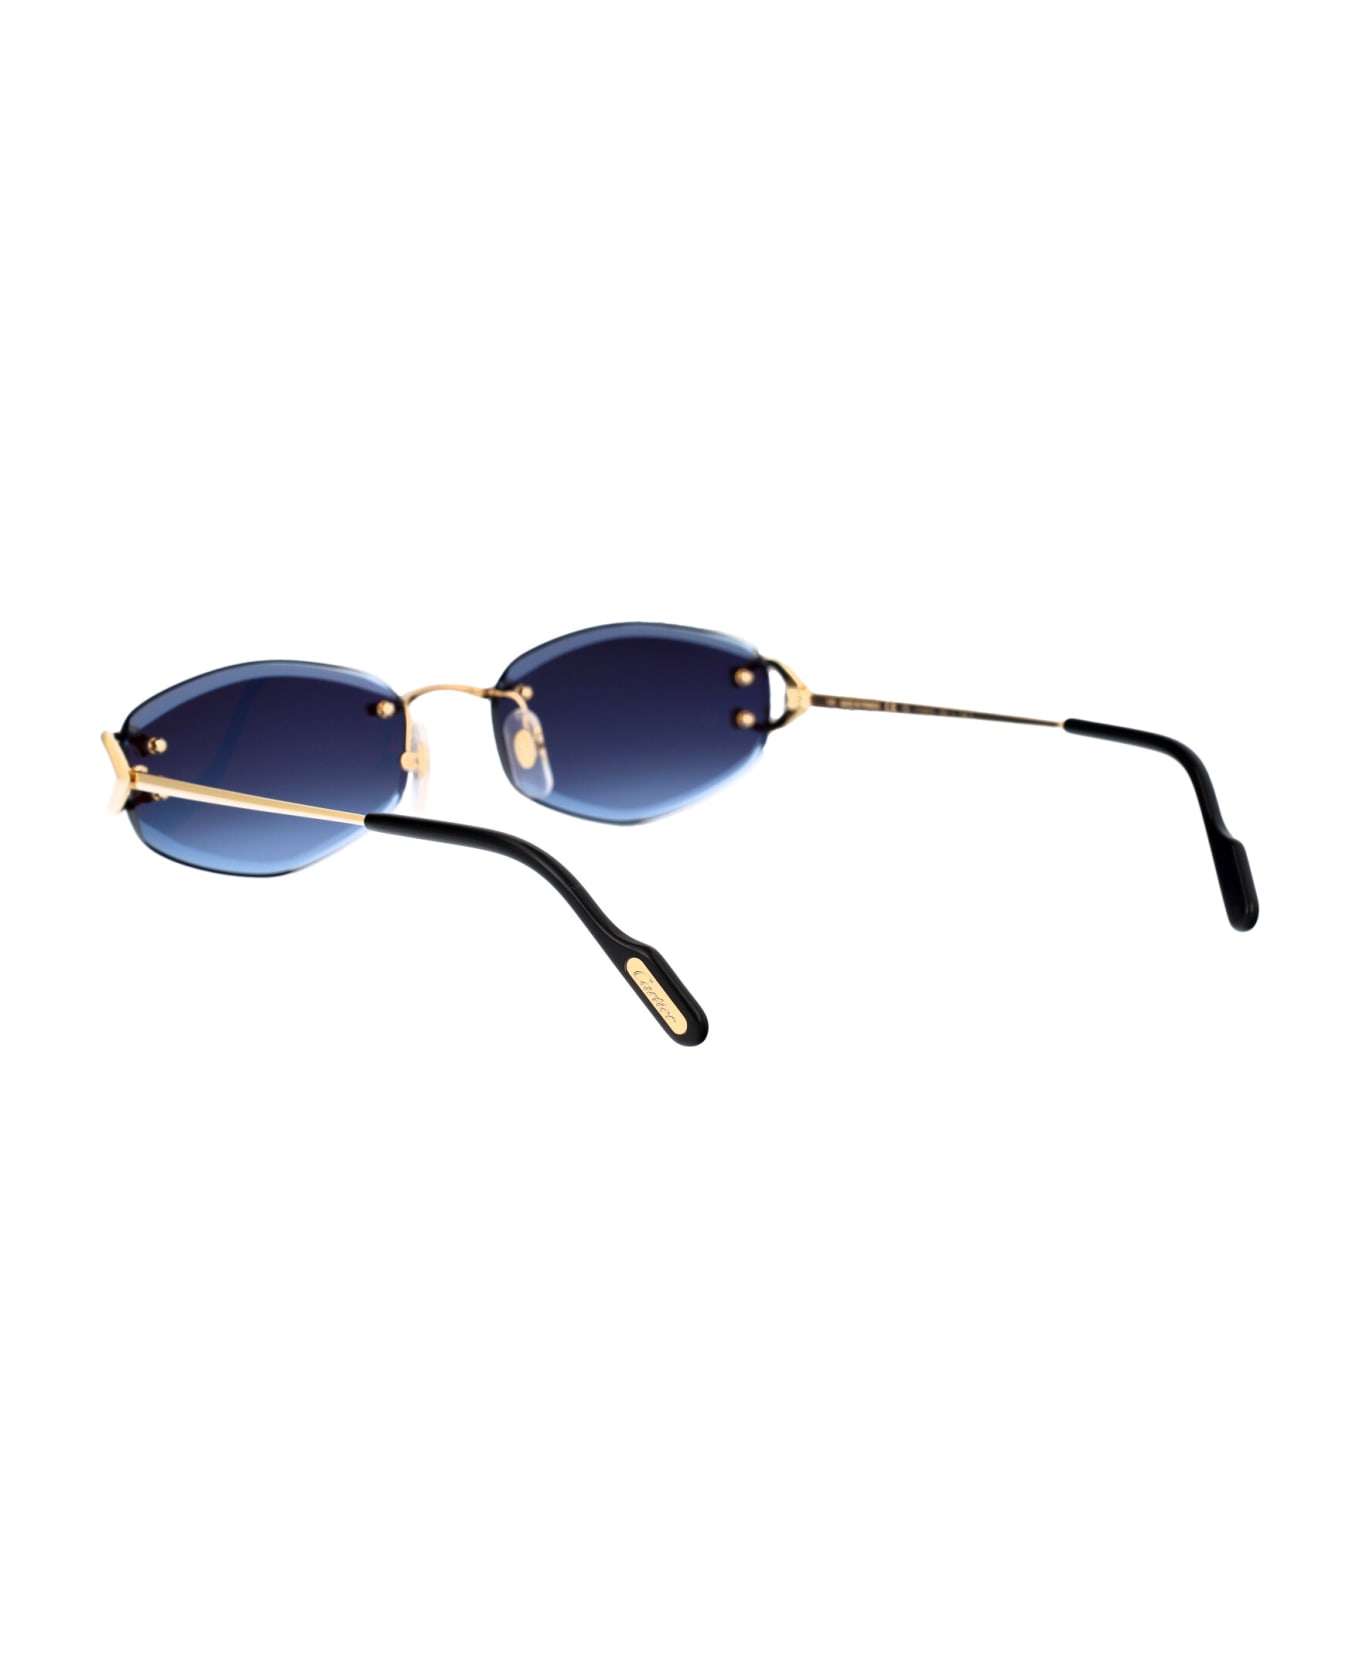 Cartier Eyewear Ct0467s Sunglasses - 002 GOLD GOLD BLUE